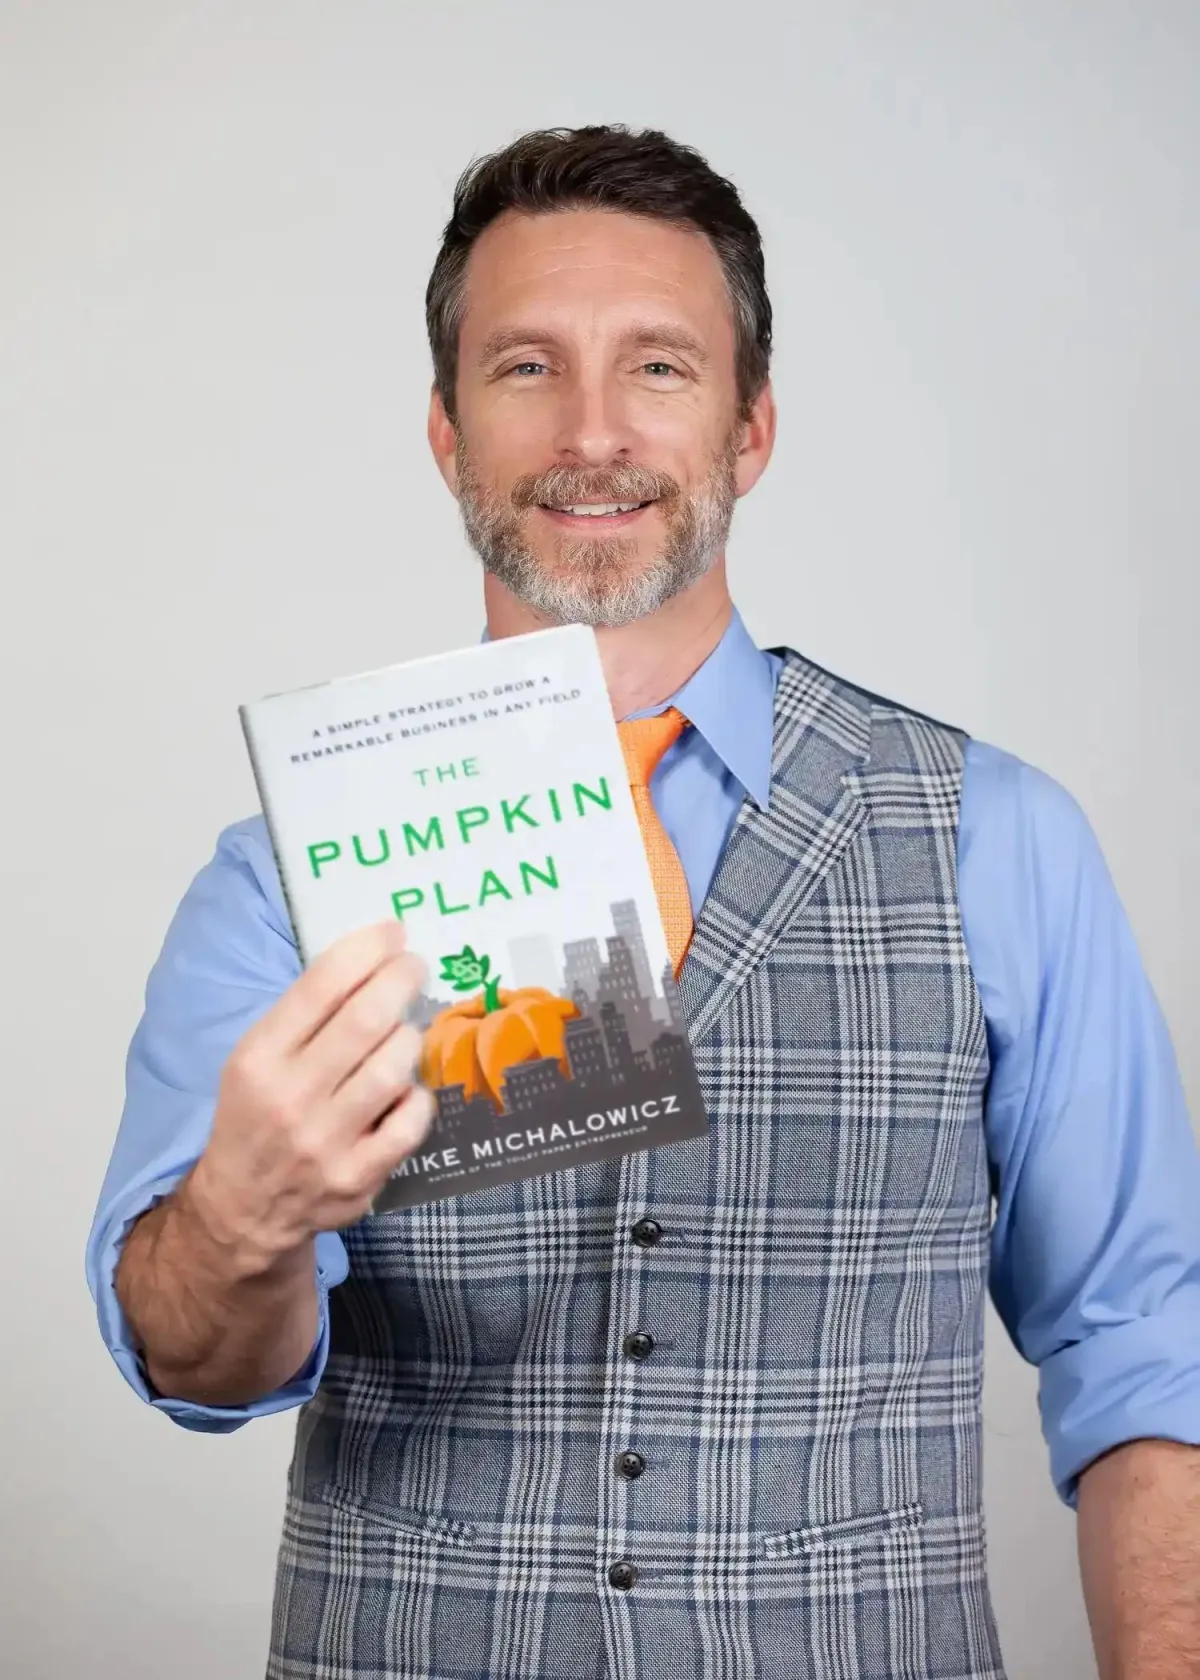 The Pumpkin Plan Programe by Mike Michalowicz